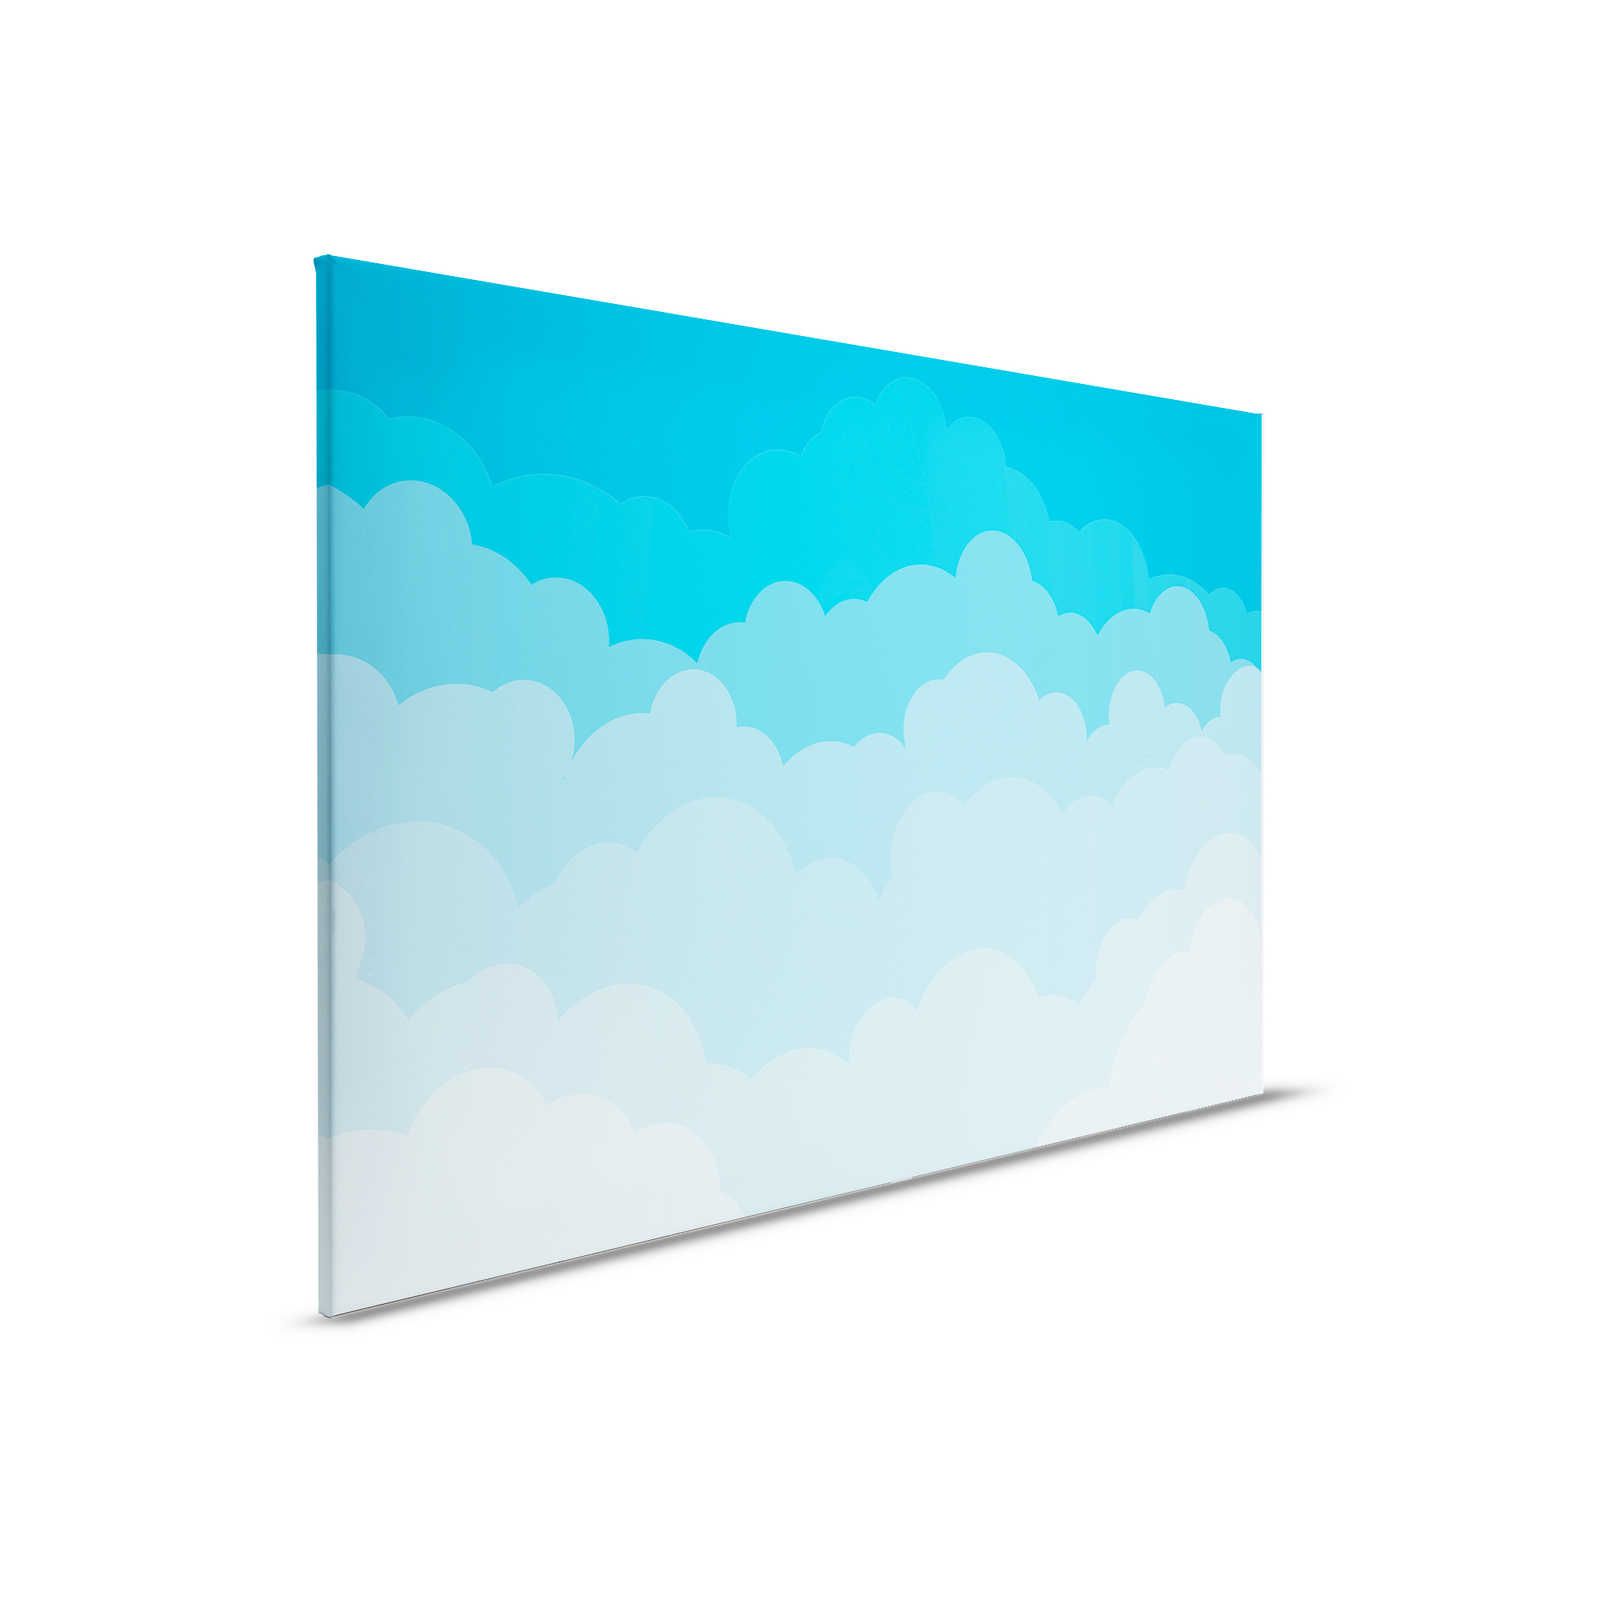         Leinwand Himmel mit Wolken im Comic-Stil – 90 cm x 60 cm
    